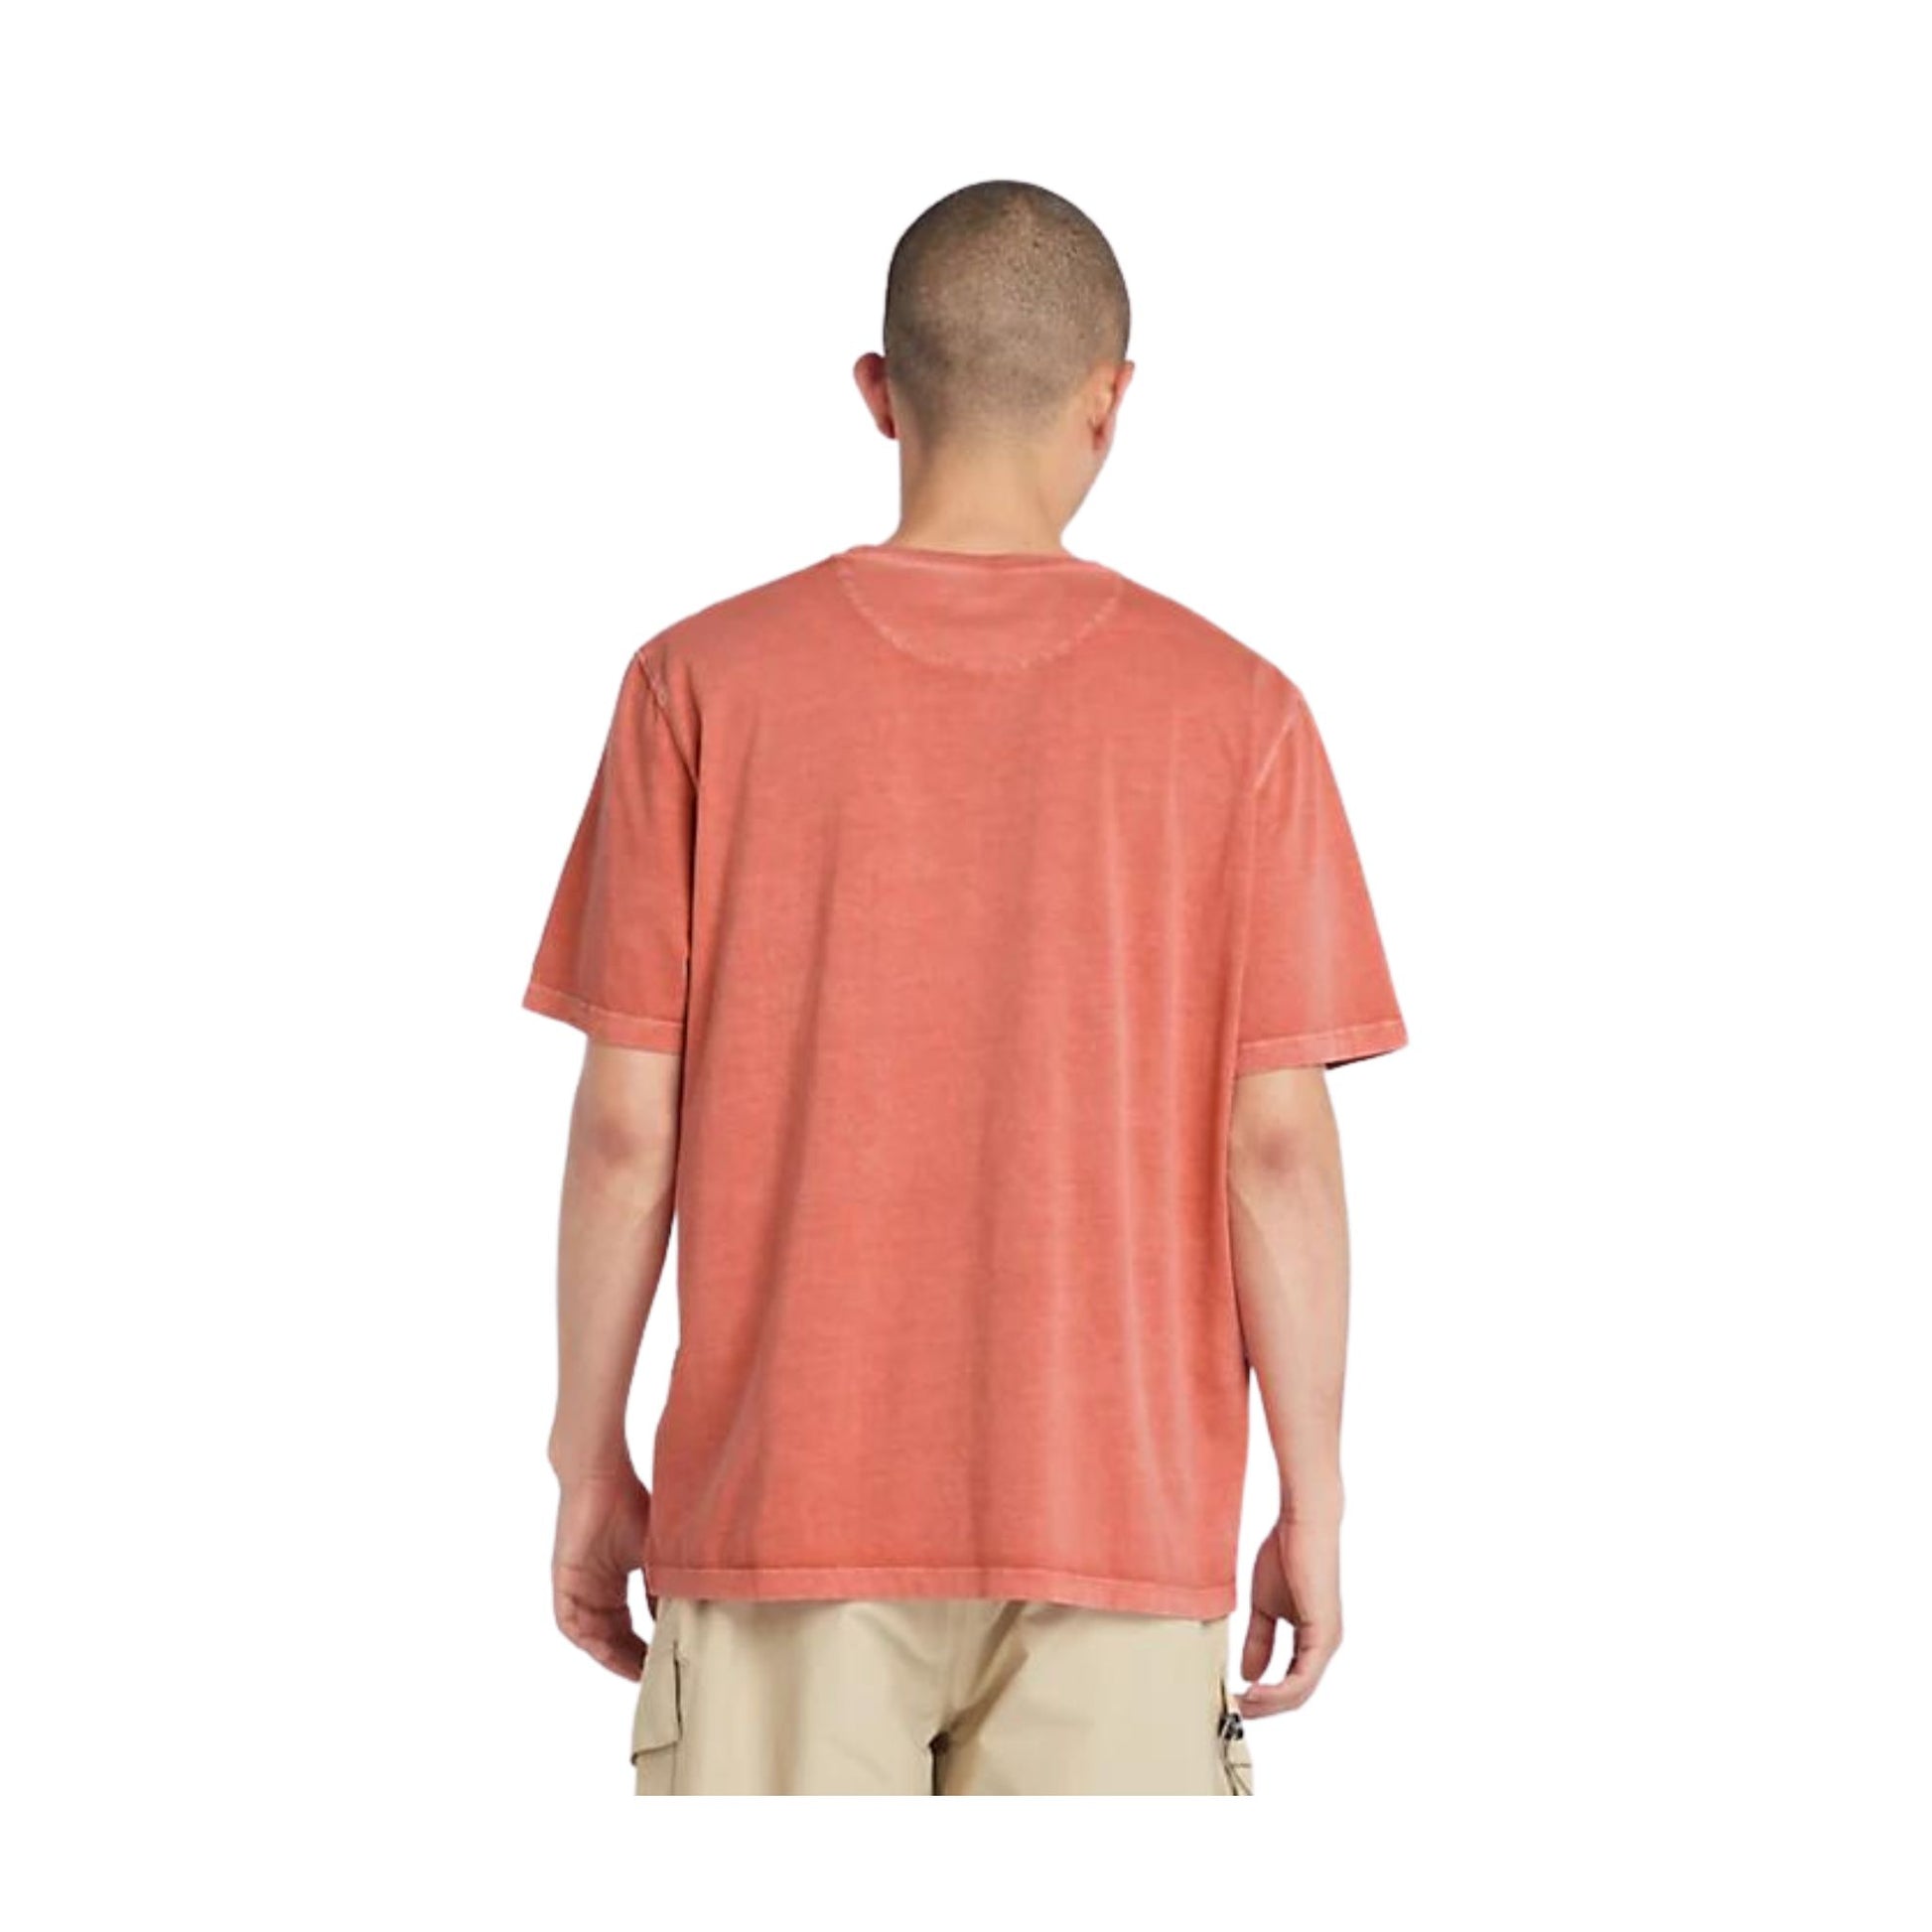 Retro modello con T-shirt in cotone con logo ricamato sul petto colore Arancione